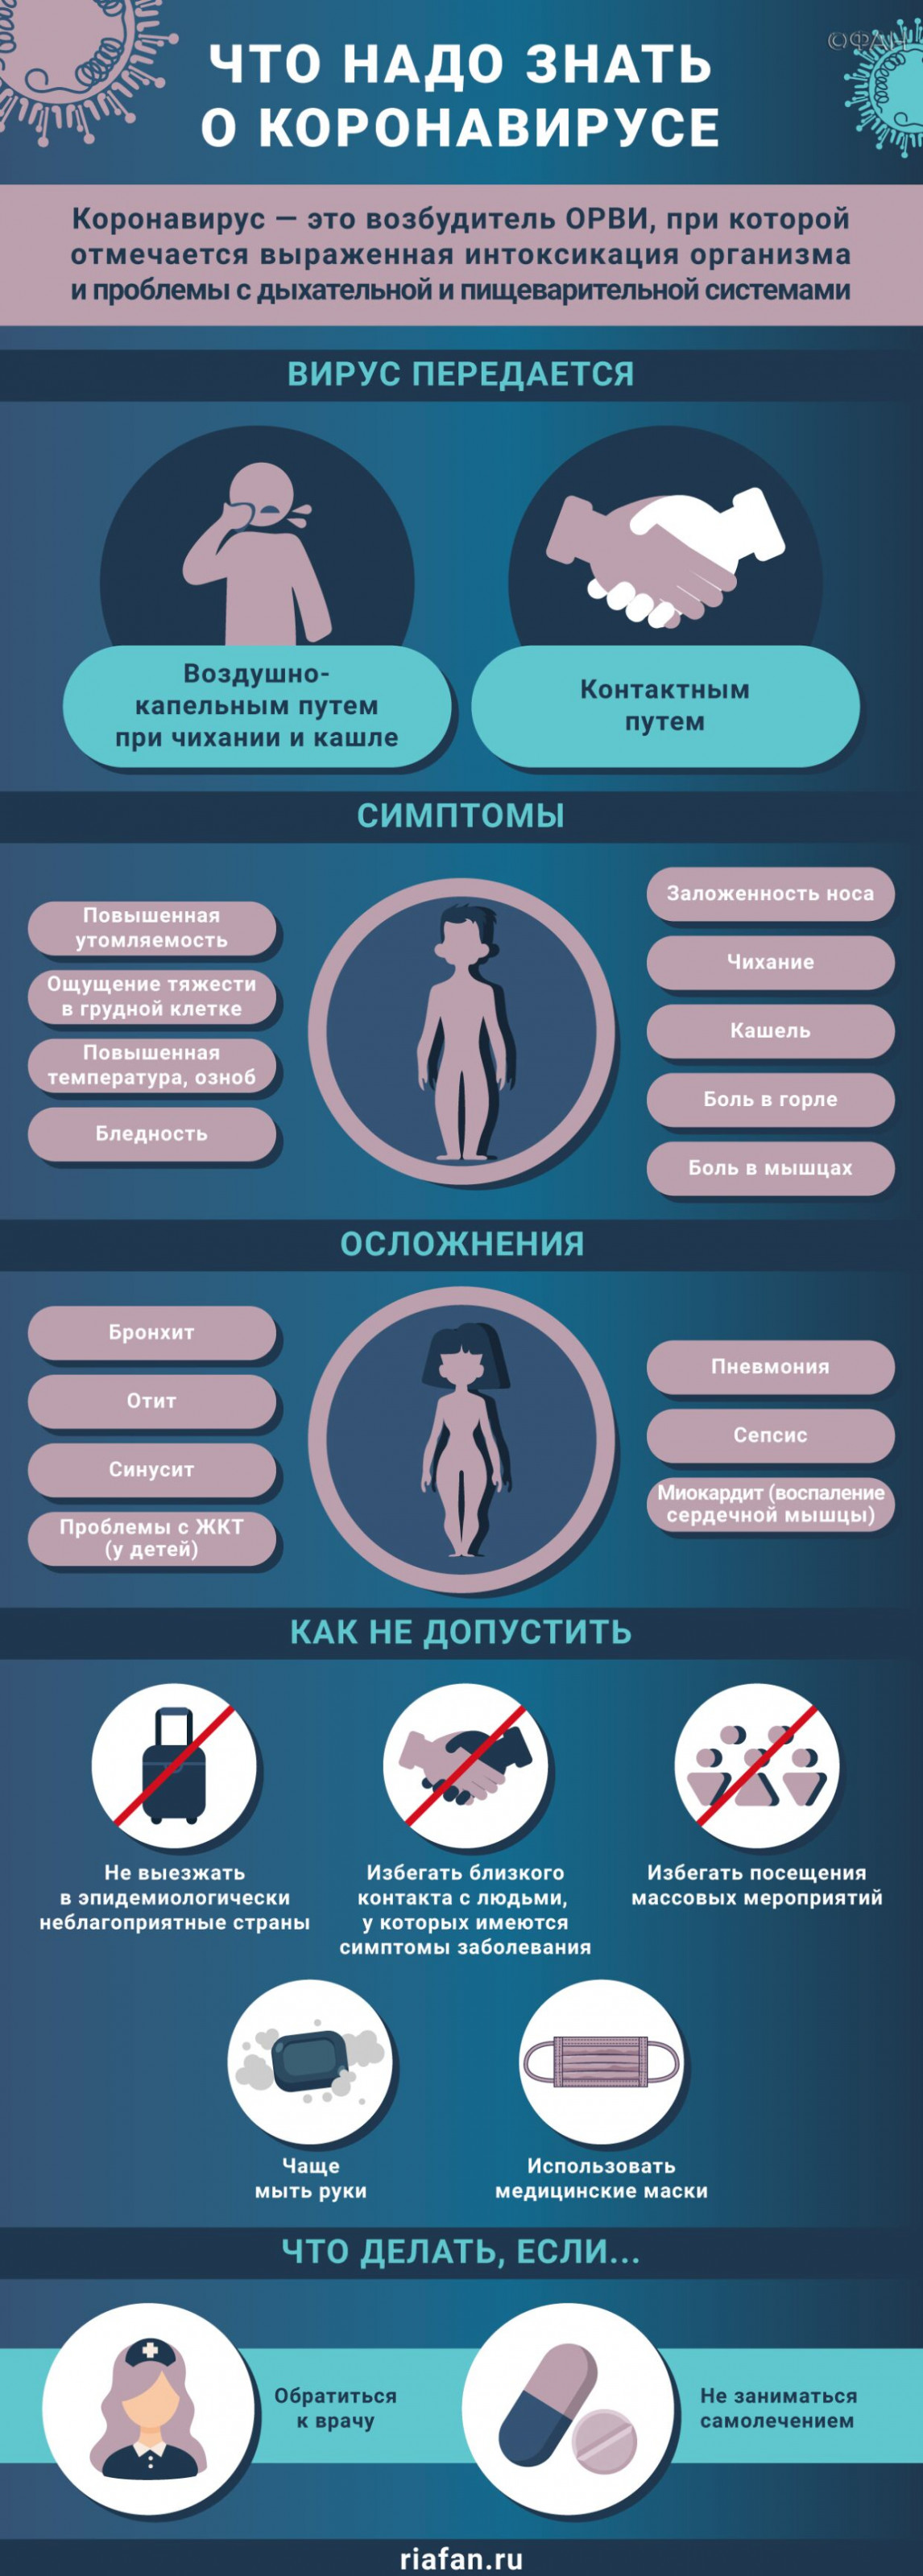 Медики за сутки выявили 180 случаев коронавируса в Петербурге